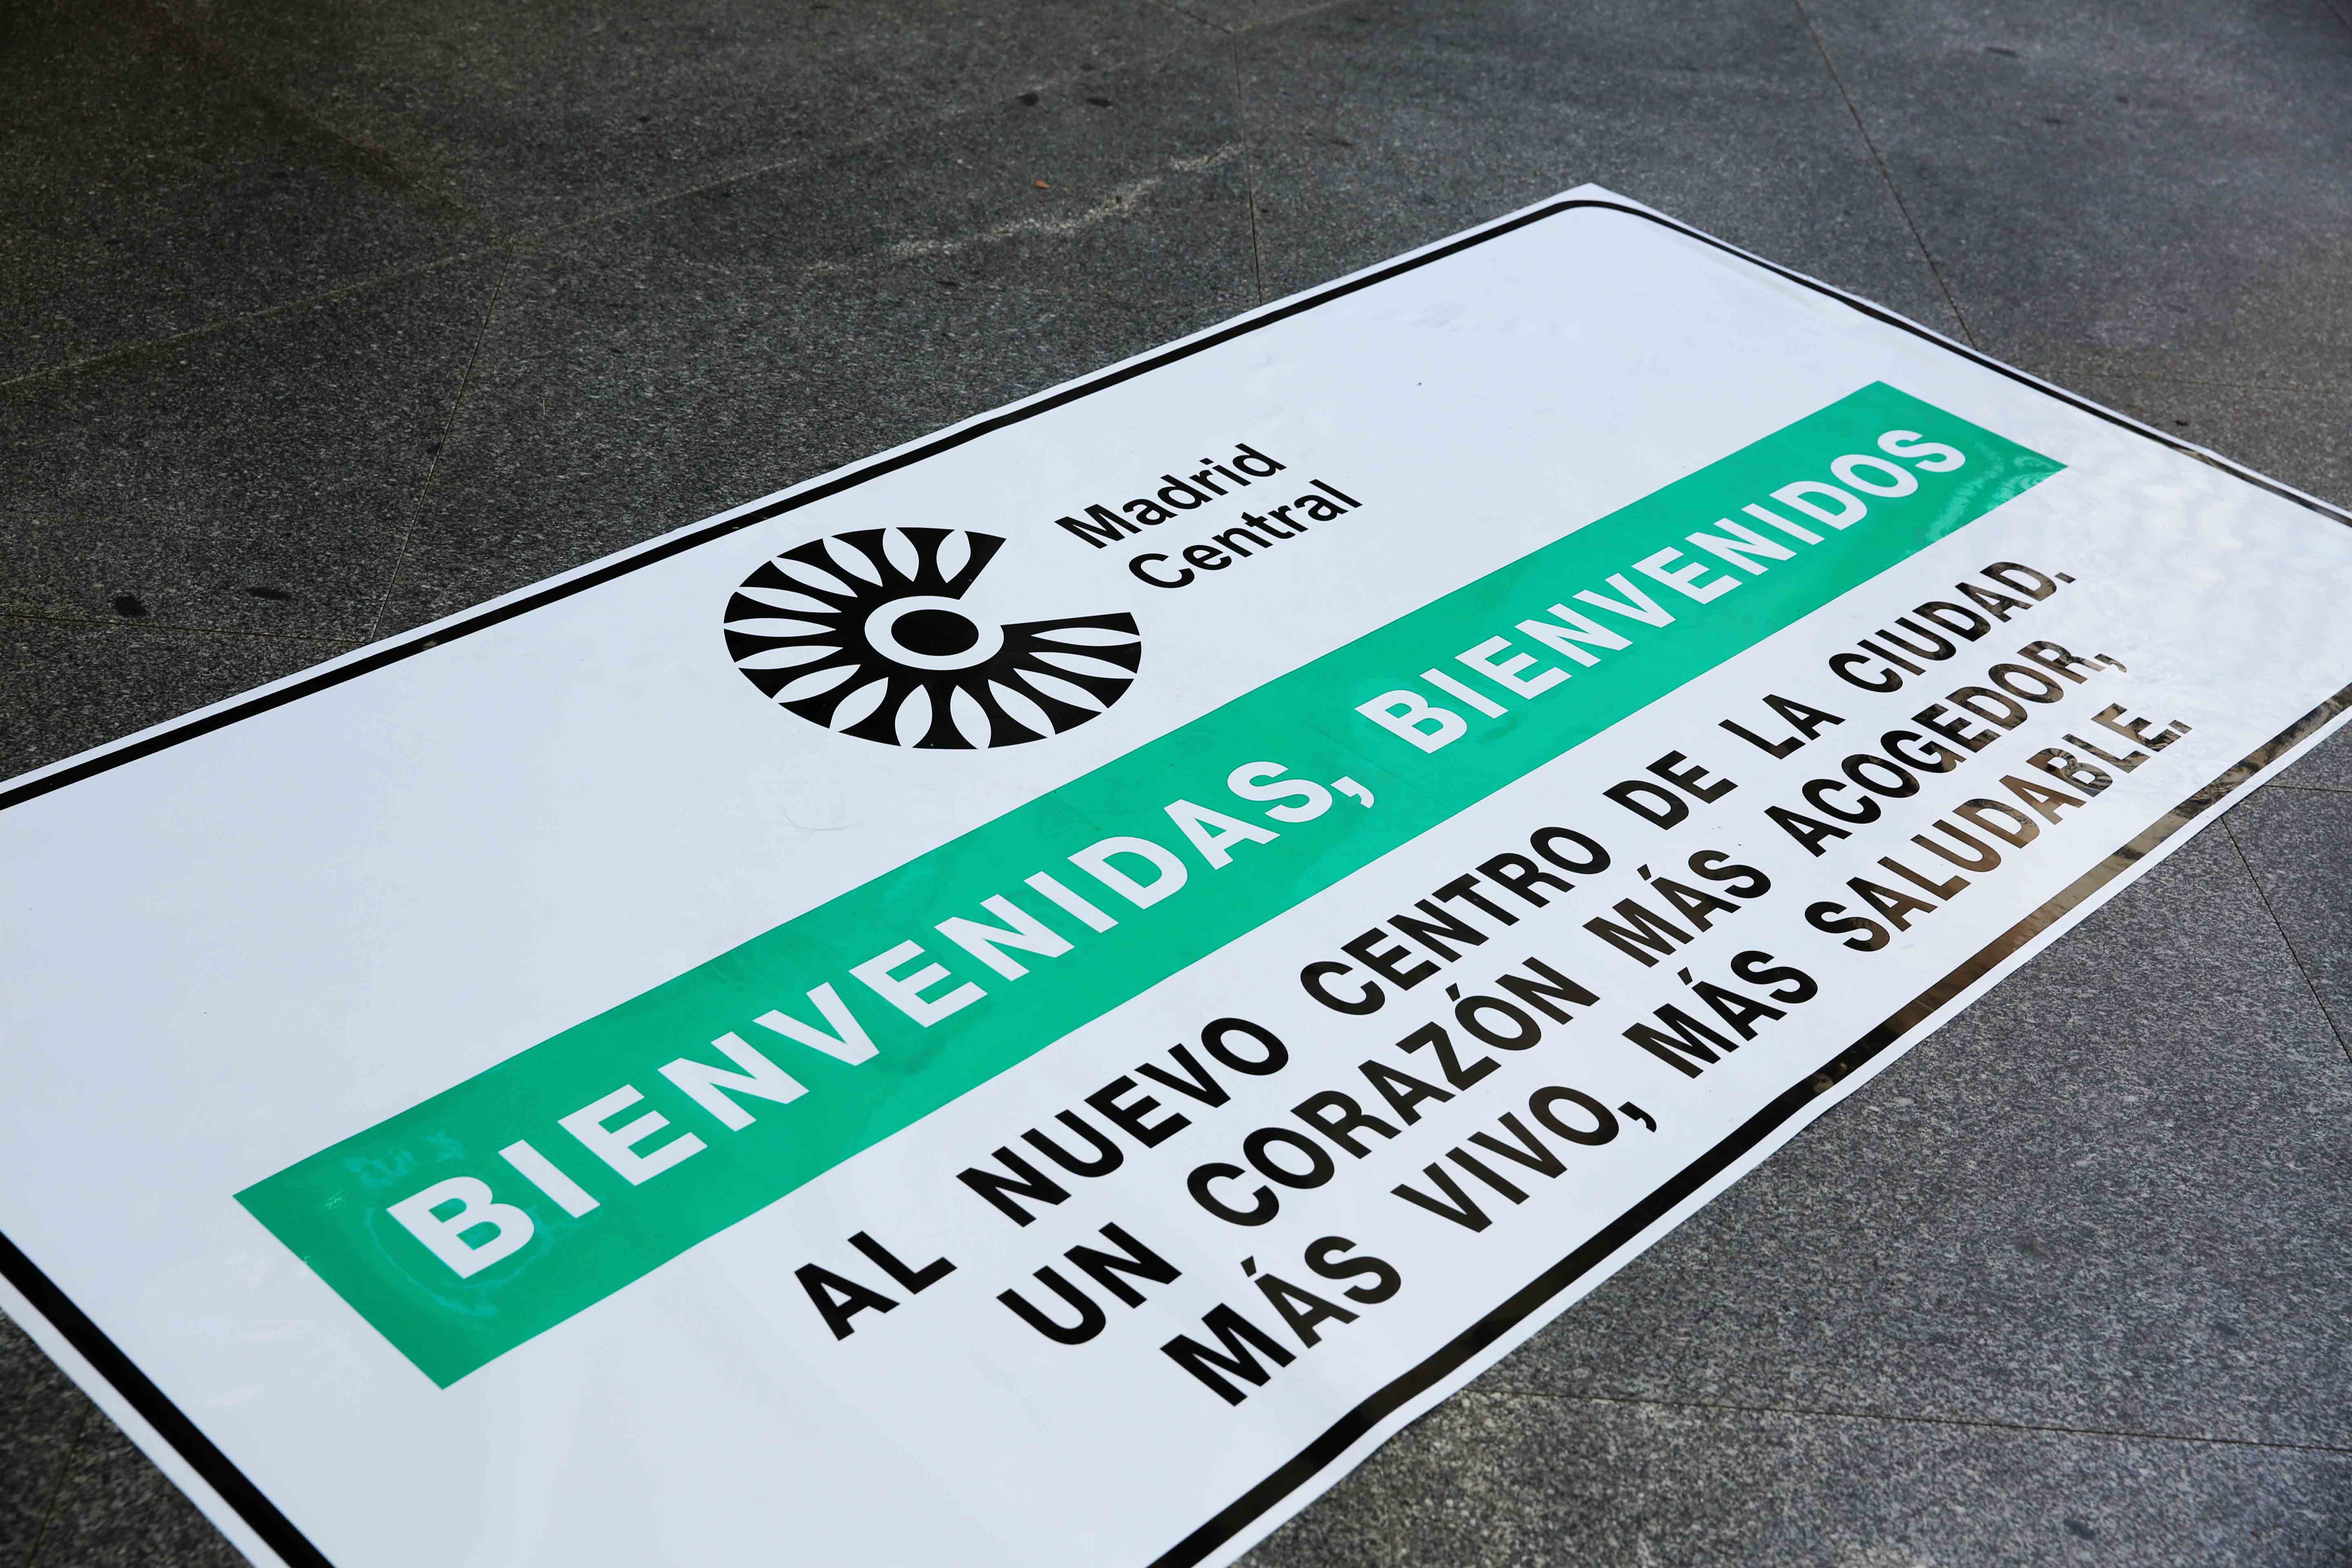 Decenas de asociaciones de pymes, autónomos, empresarios y trabajadores reclaman la paralización de Madrid Central - La Viña